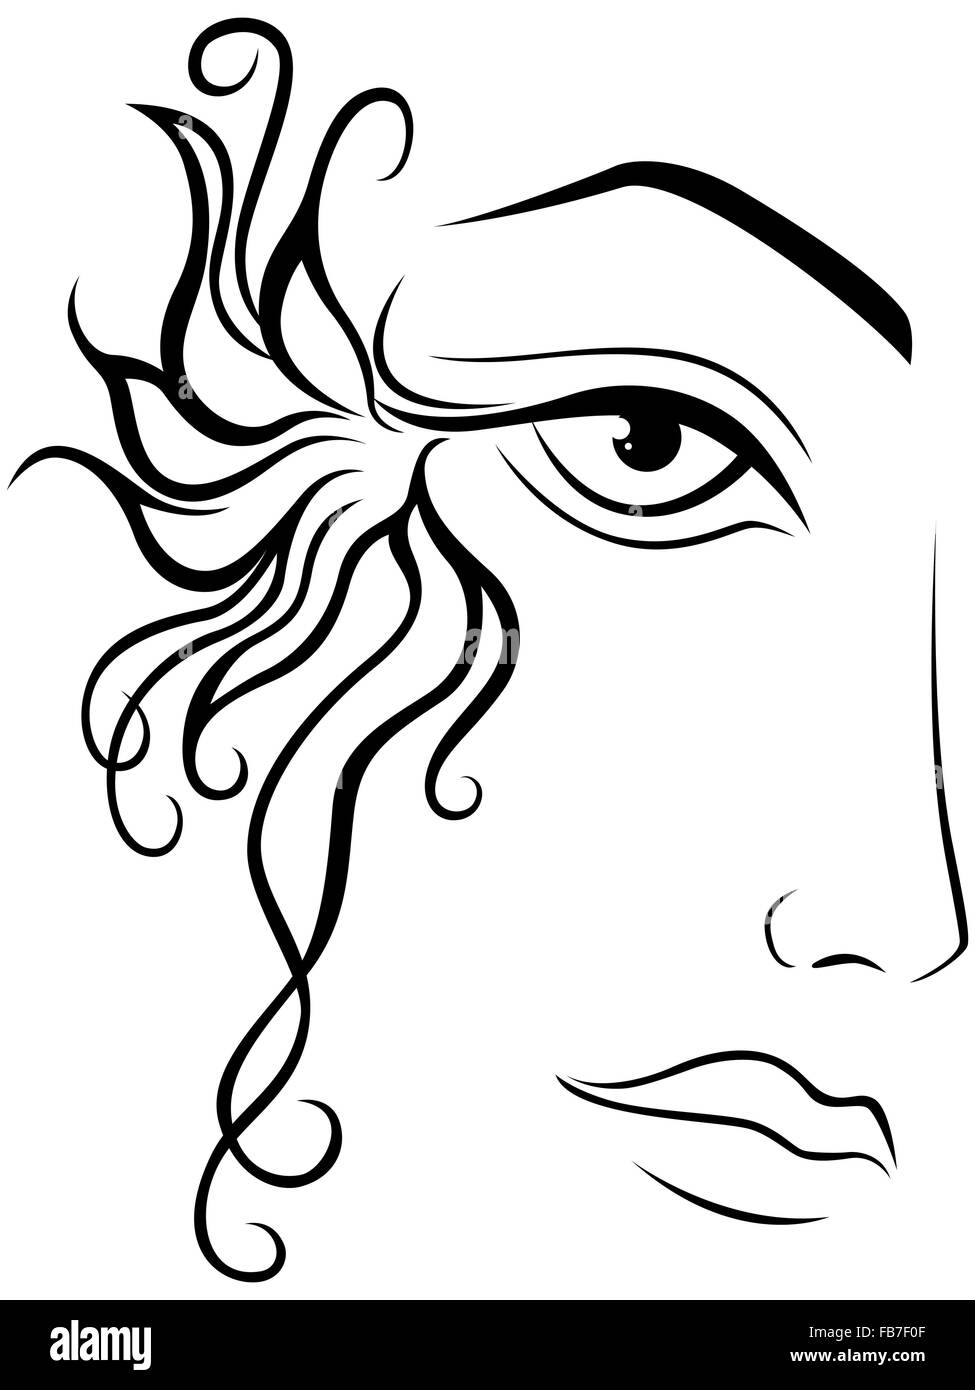 Abstract di nero faccia femmina contorno su uno sfondo bianco, del disegno a mano oggetti grafici vettoriali Illustrazione Vettoriale